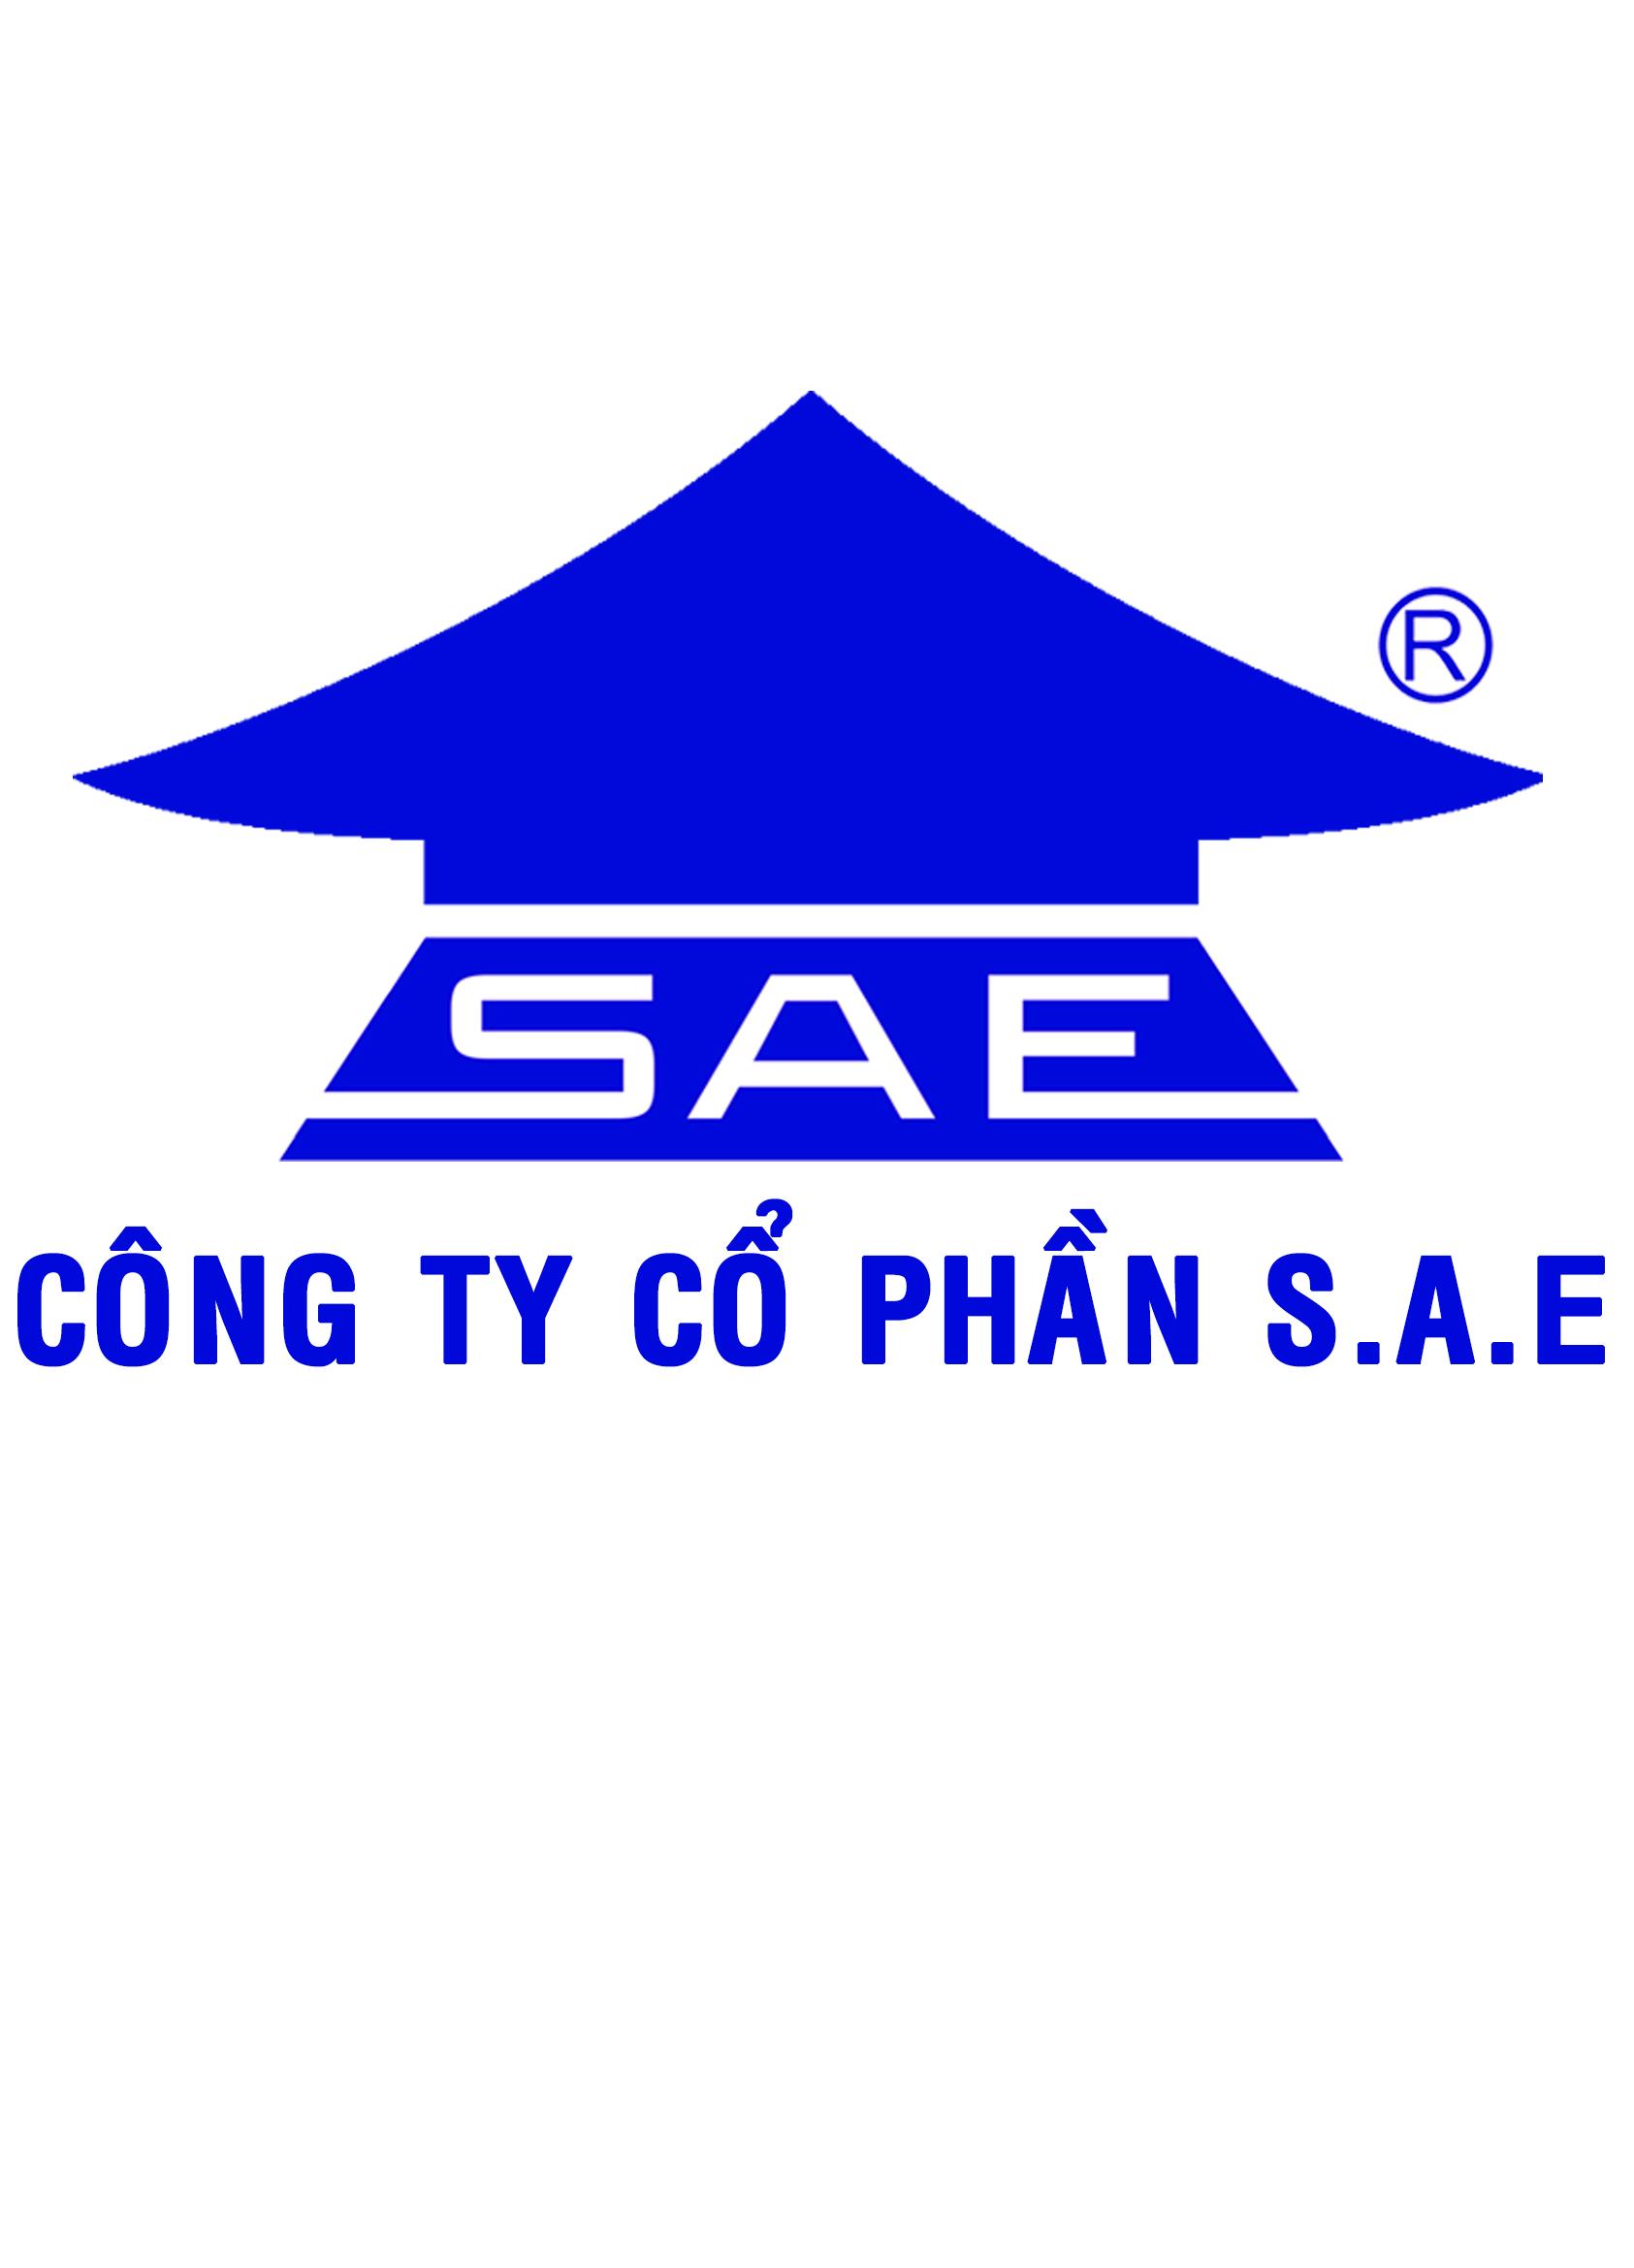  				Tran Kong Phuong				